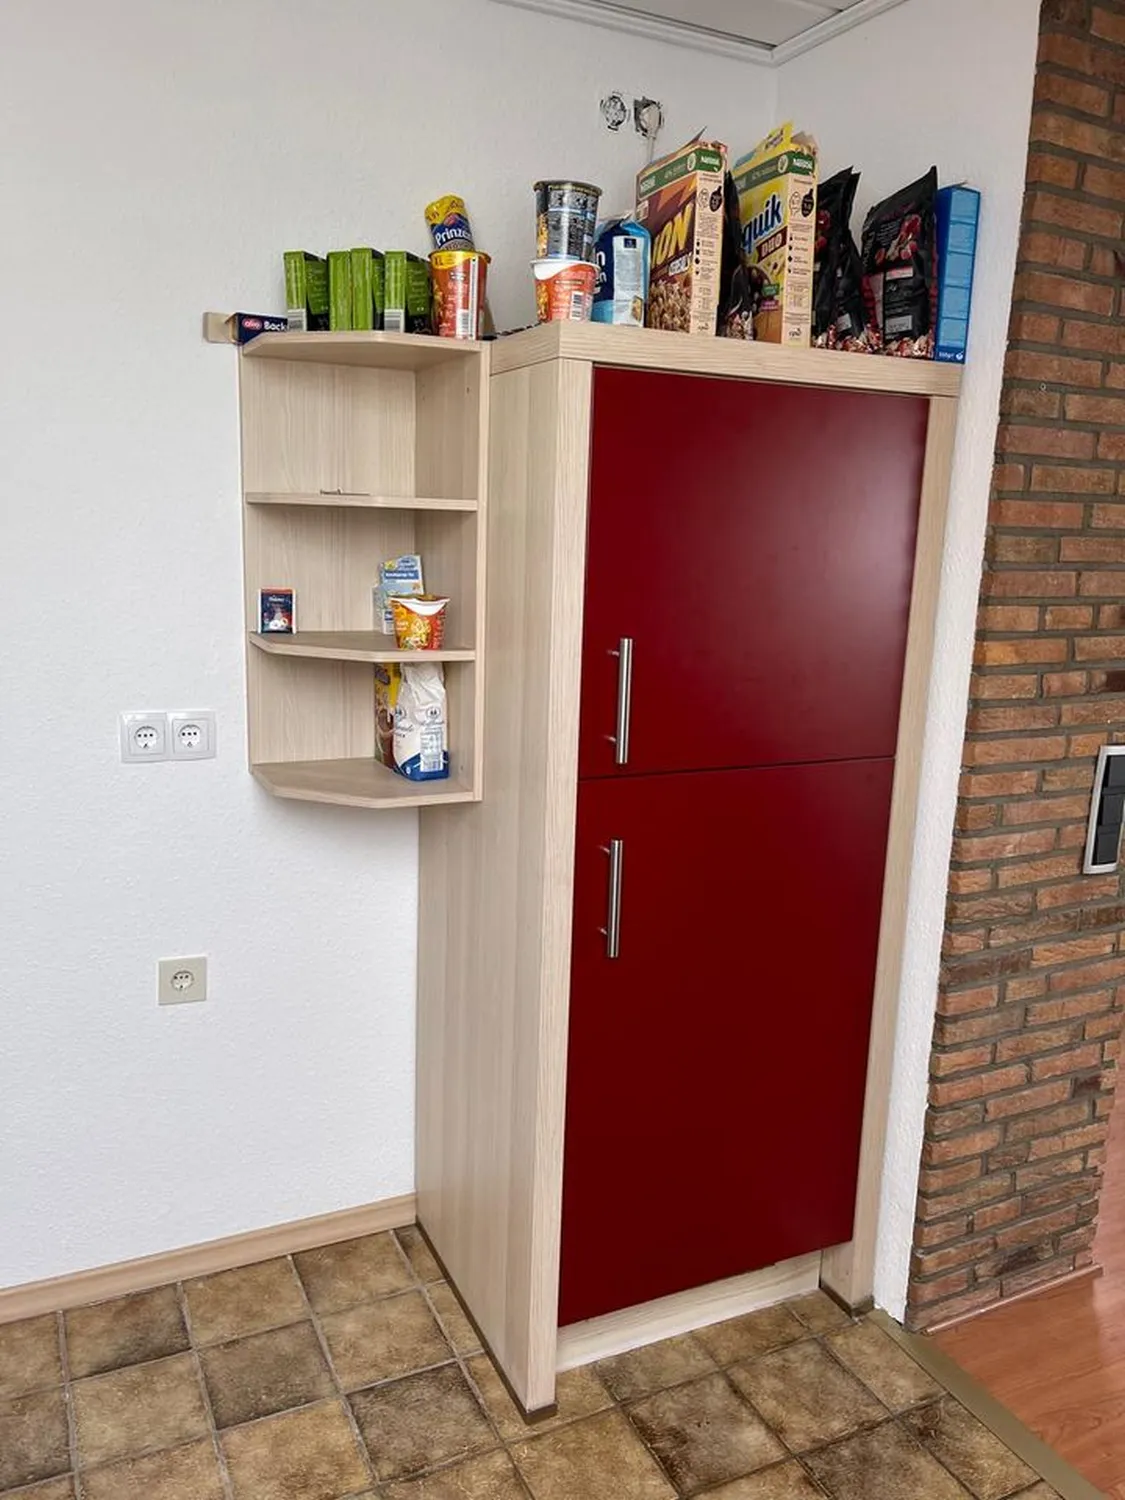 Immobilienverwaltung Paul, 3-Zimmer-Wohnung, Kühlschrank und Regal für Lebensmittel